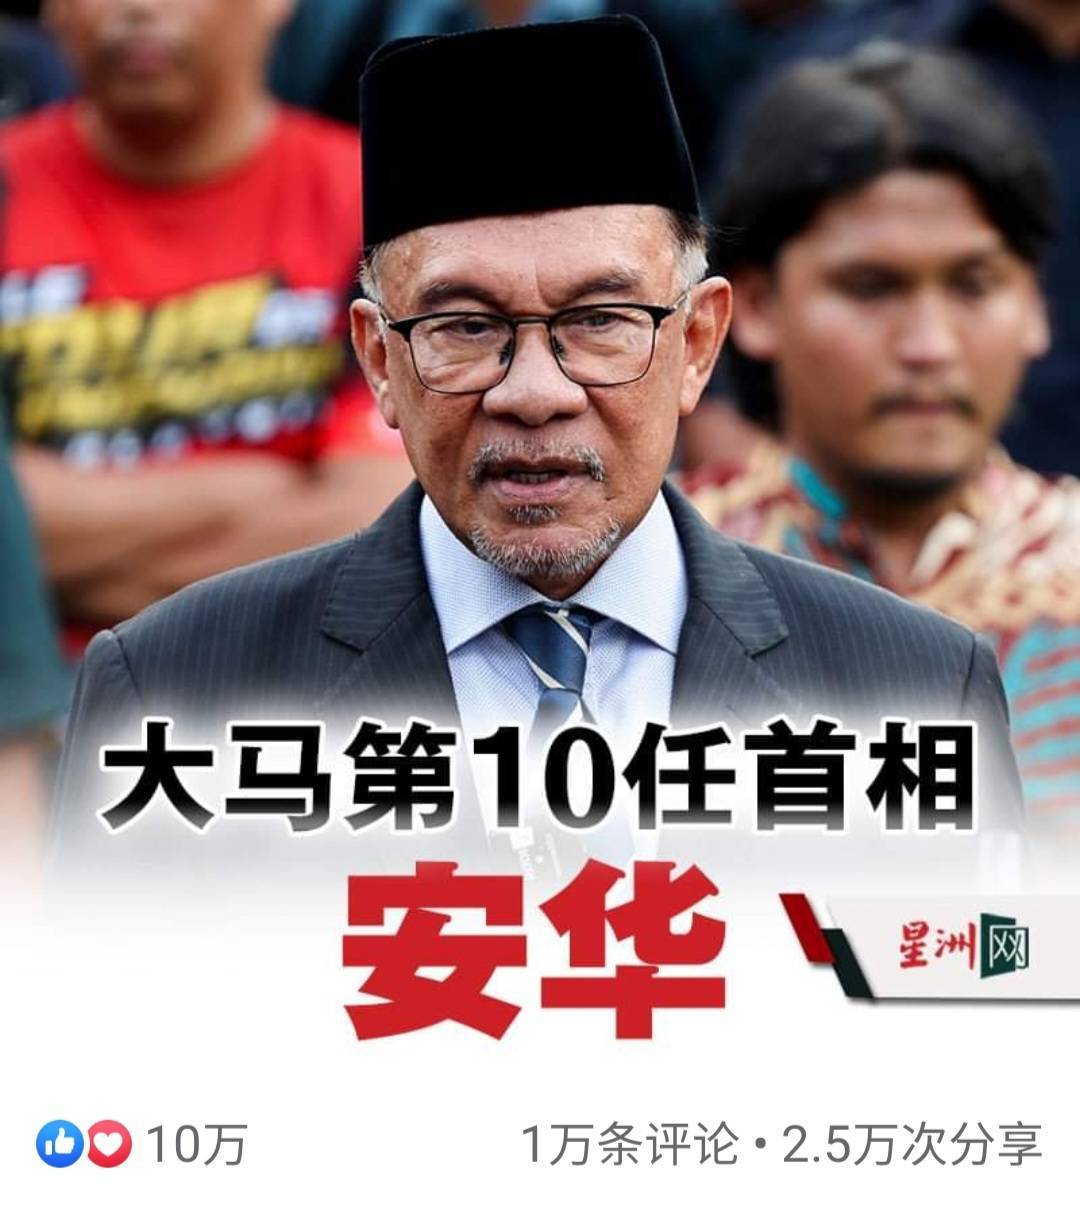 马来西亚新首相尘埃落定